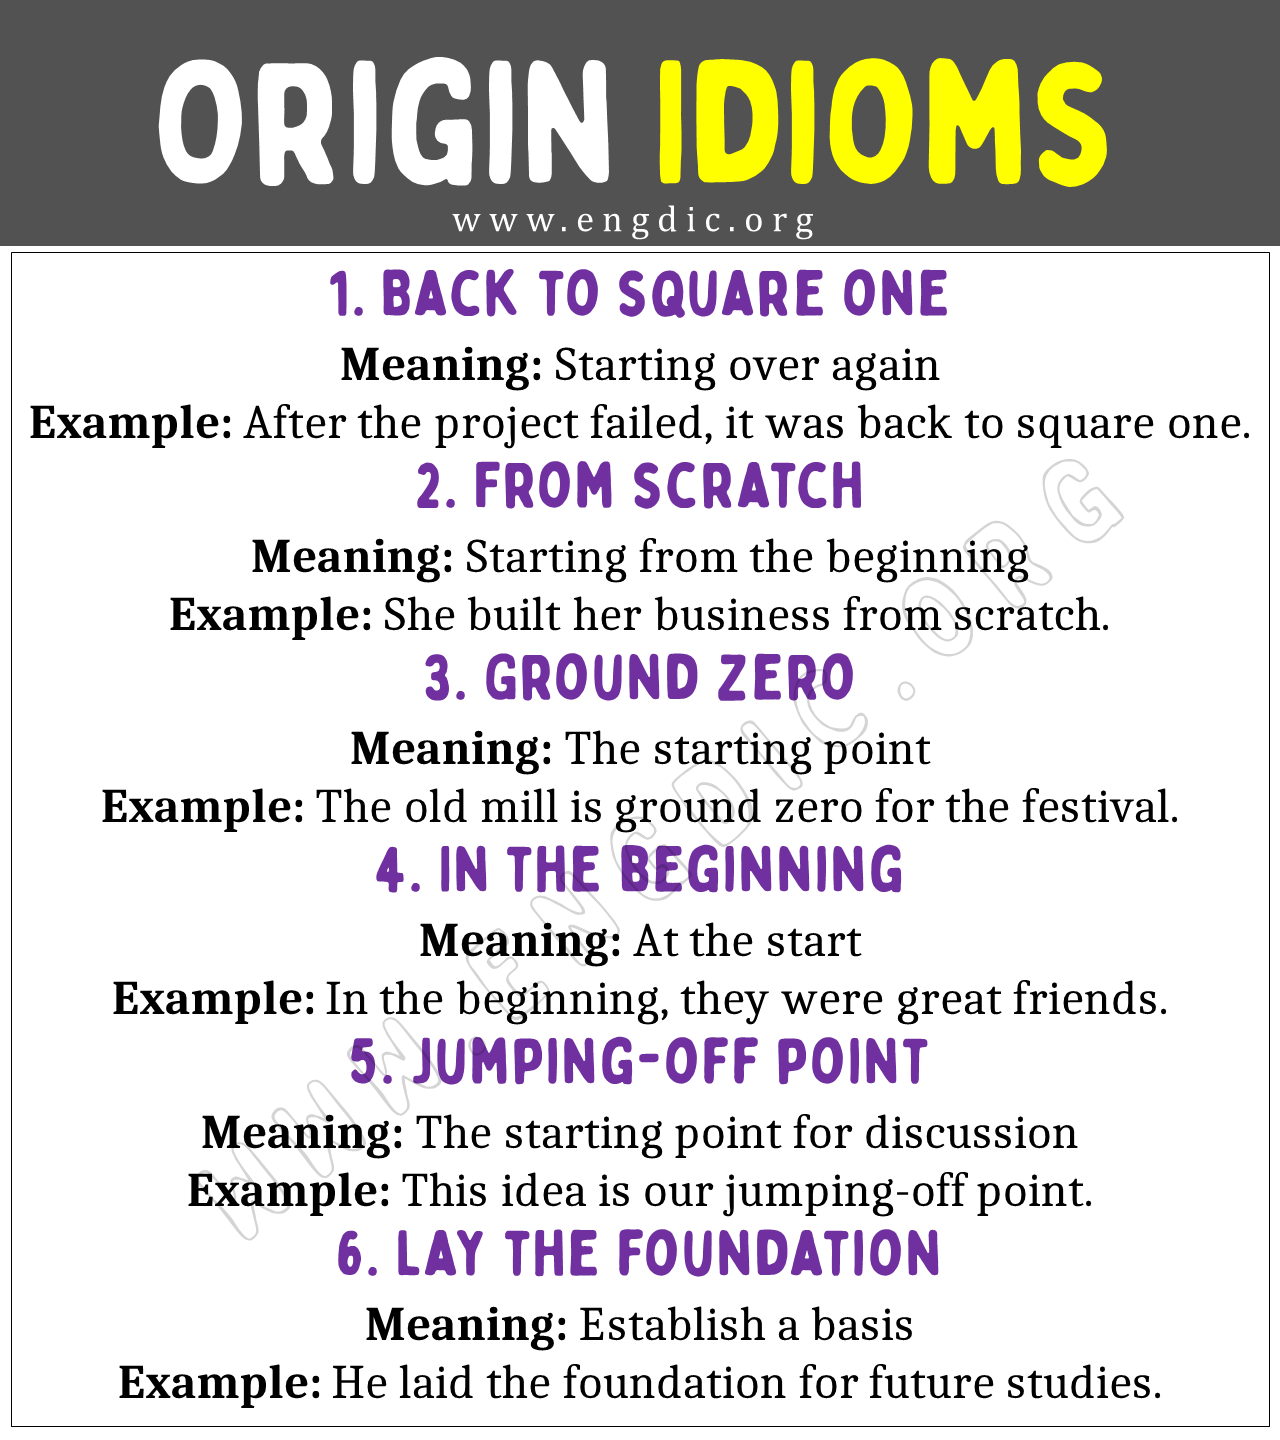 Origin Idioms